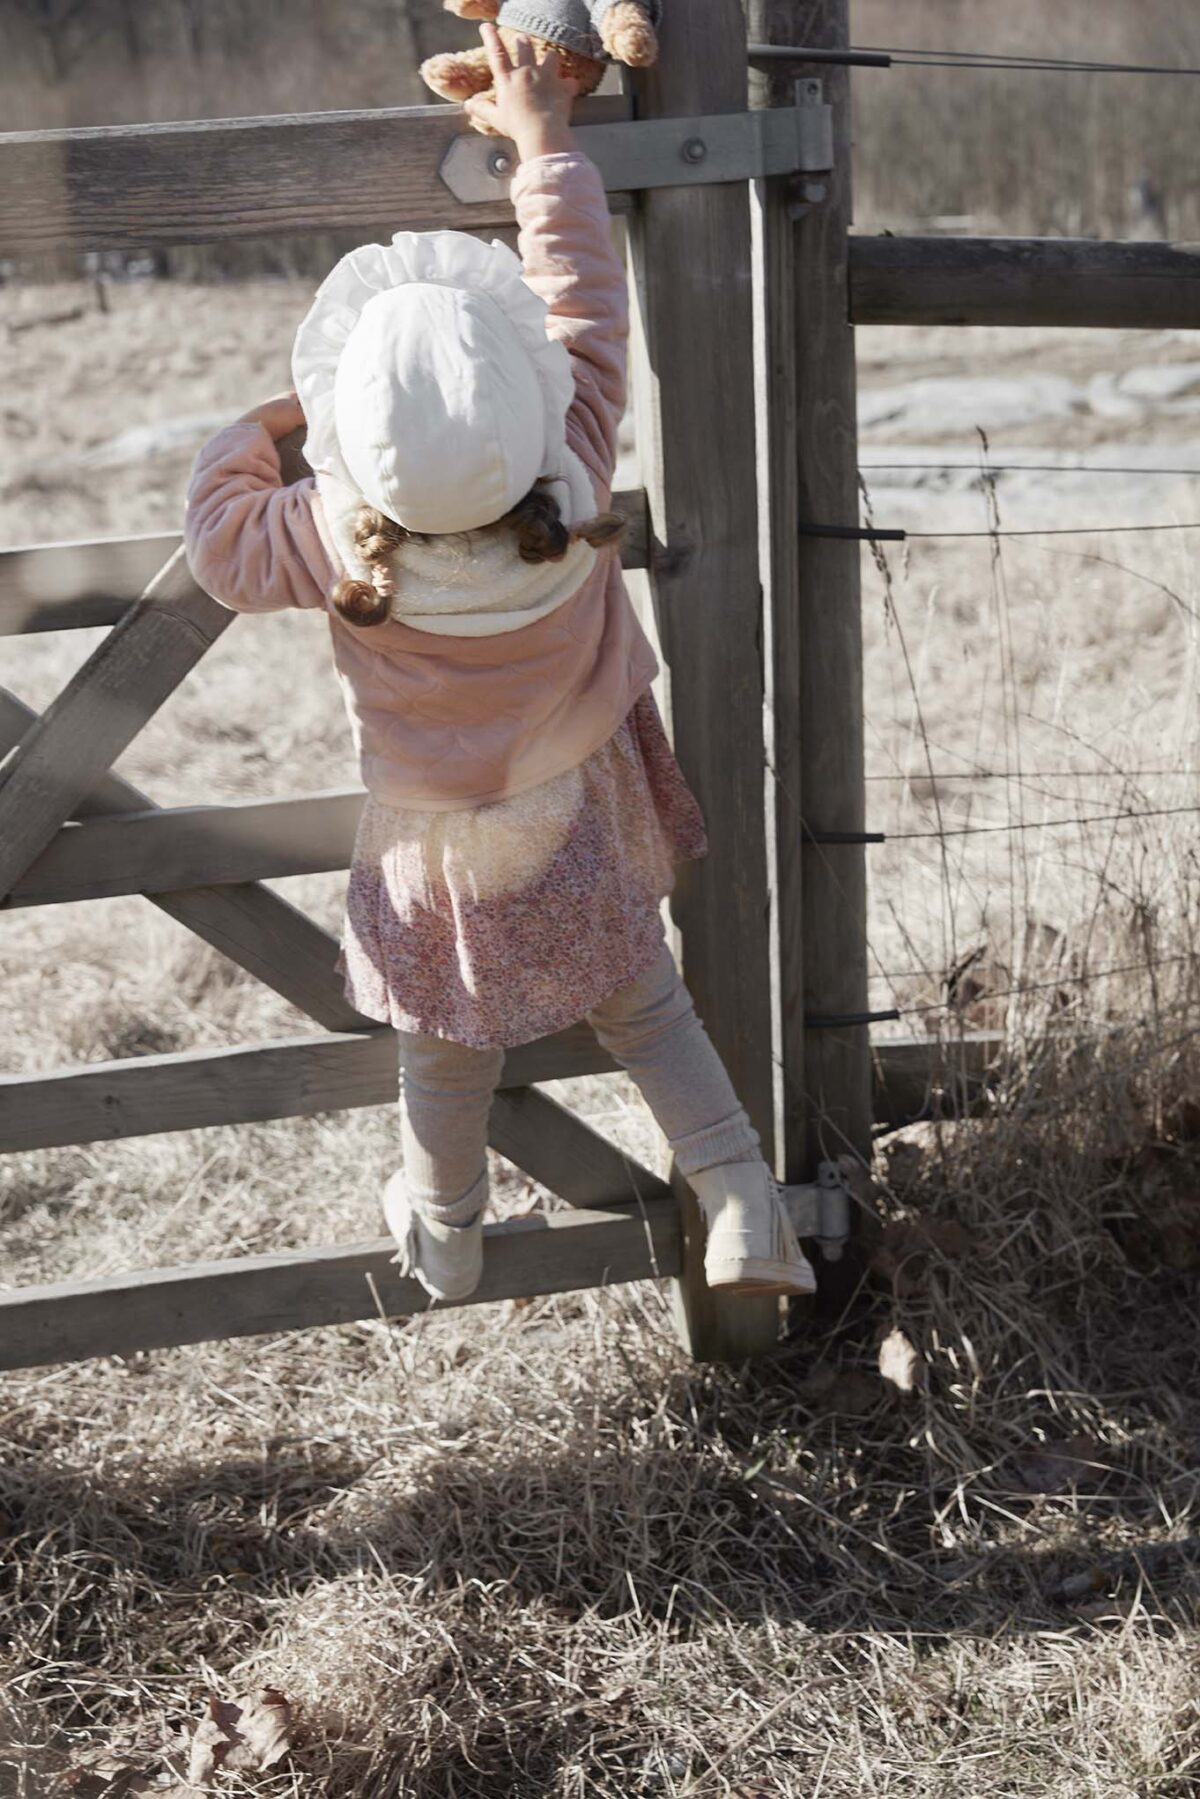 Elodie Details - Winter Bonnet - Creamy White - 0-3 Months - Ubrania I Akcesoria &Gt; Ubrania &Gt; Ubrania Dla Dzieci I Niemowląt &Gt; Ubrania Wierzchnie Dla Dzieci I Niemowląt